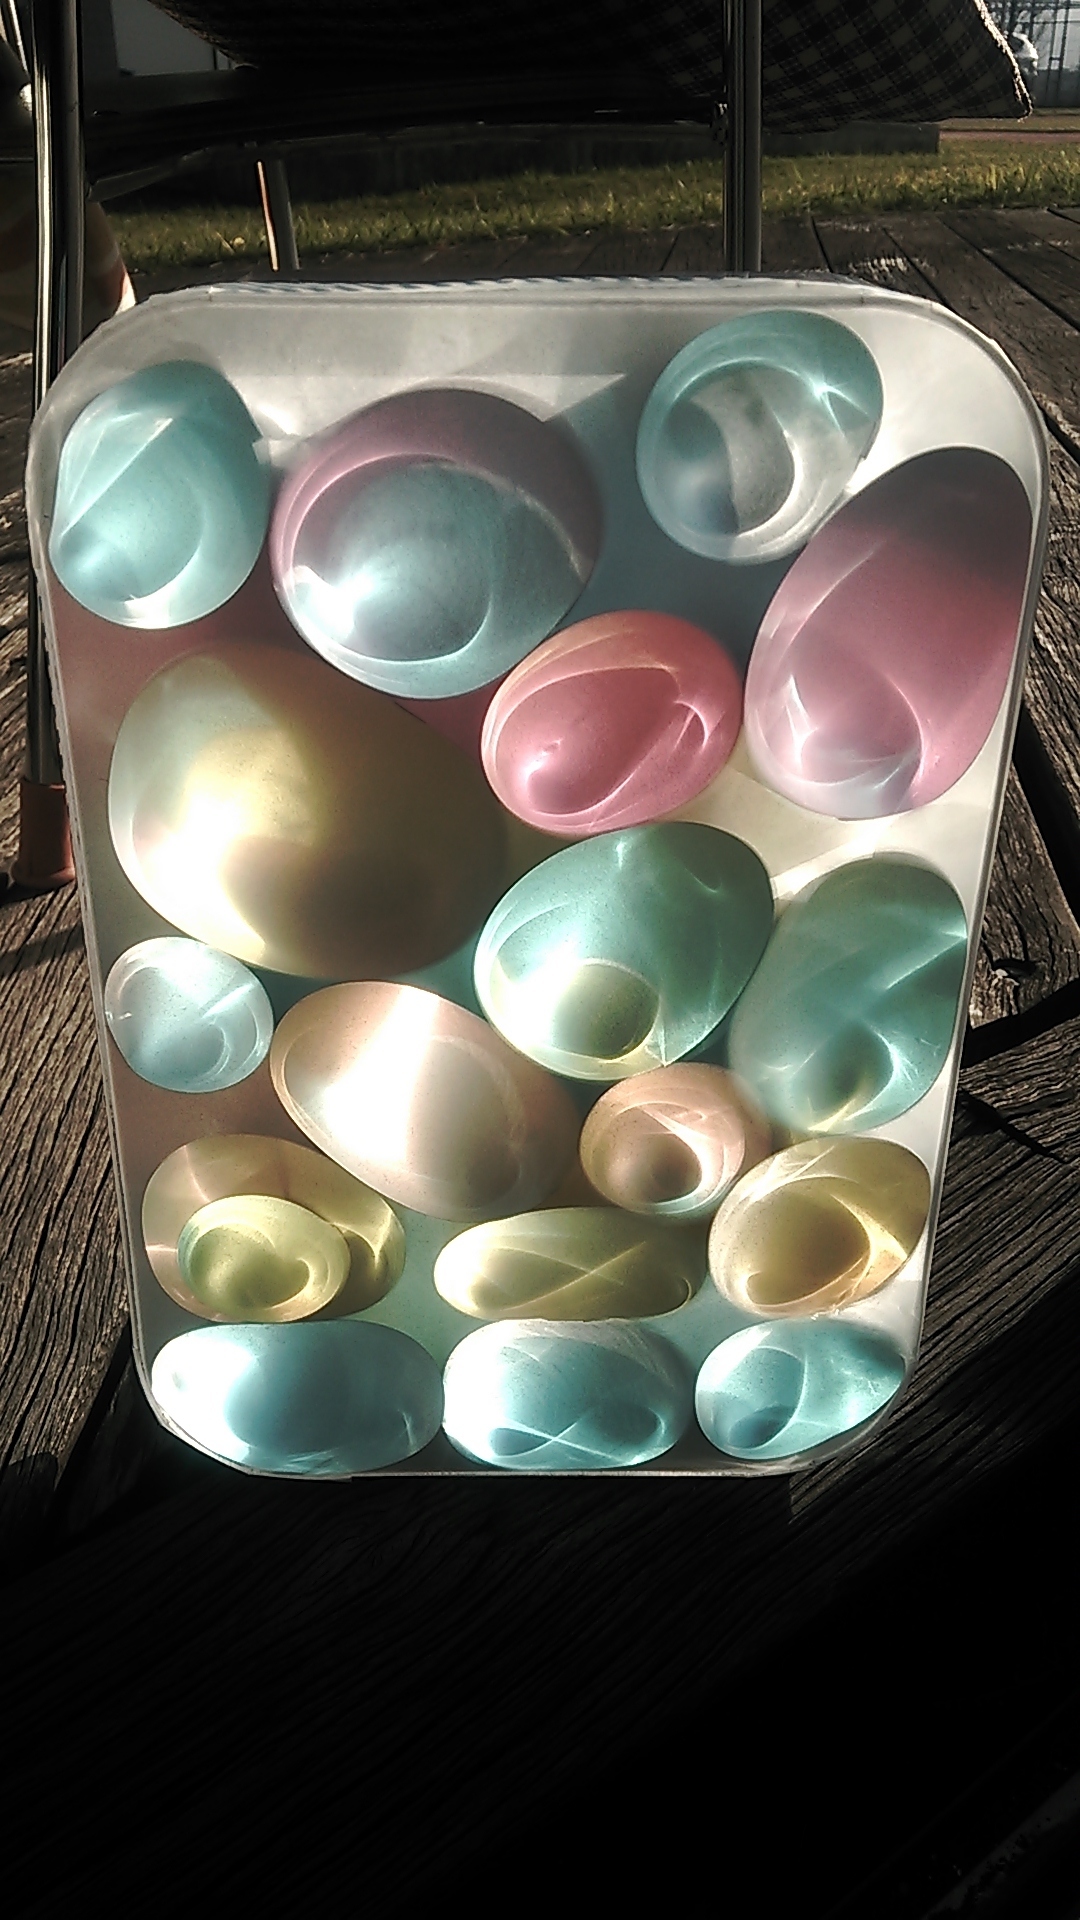 ものづくり まるでステンドグラス な 光の箱 簡易バージョンの作り方 みさき先生のスマイルサイエンスblog